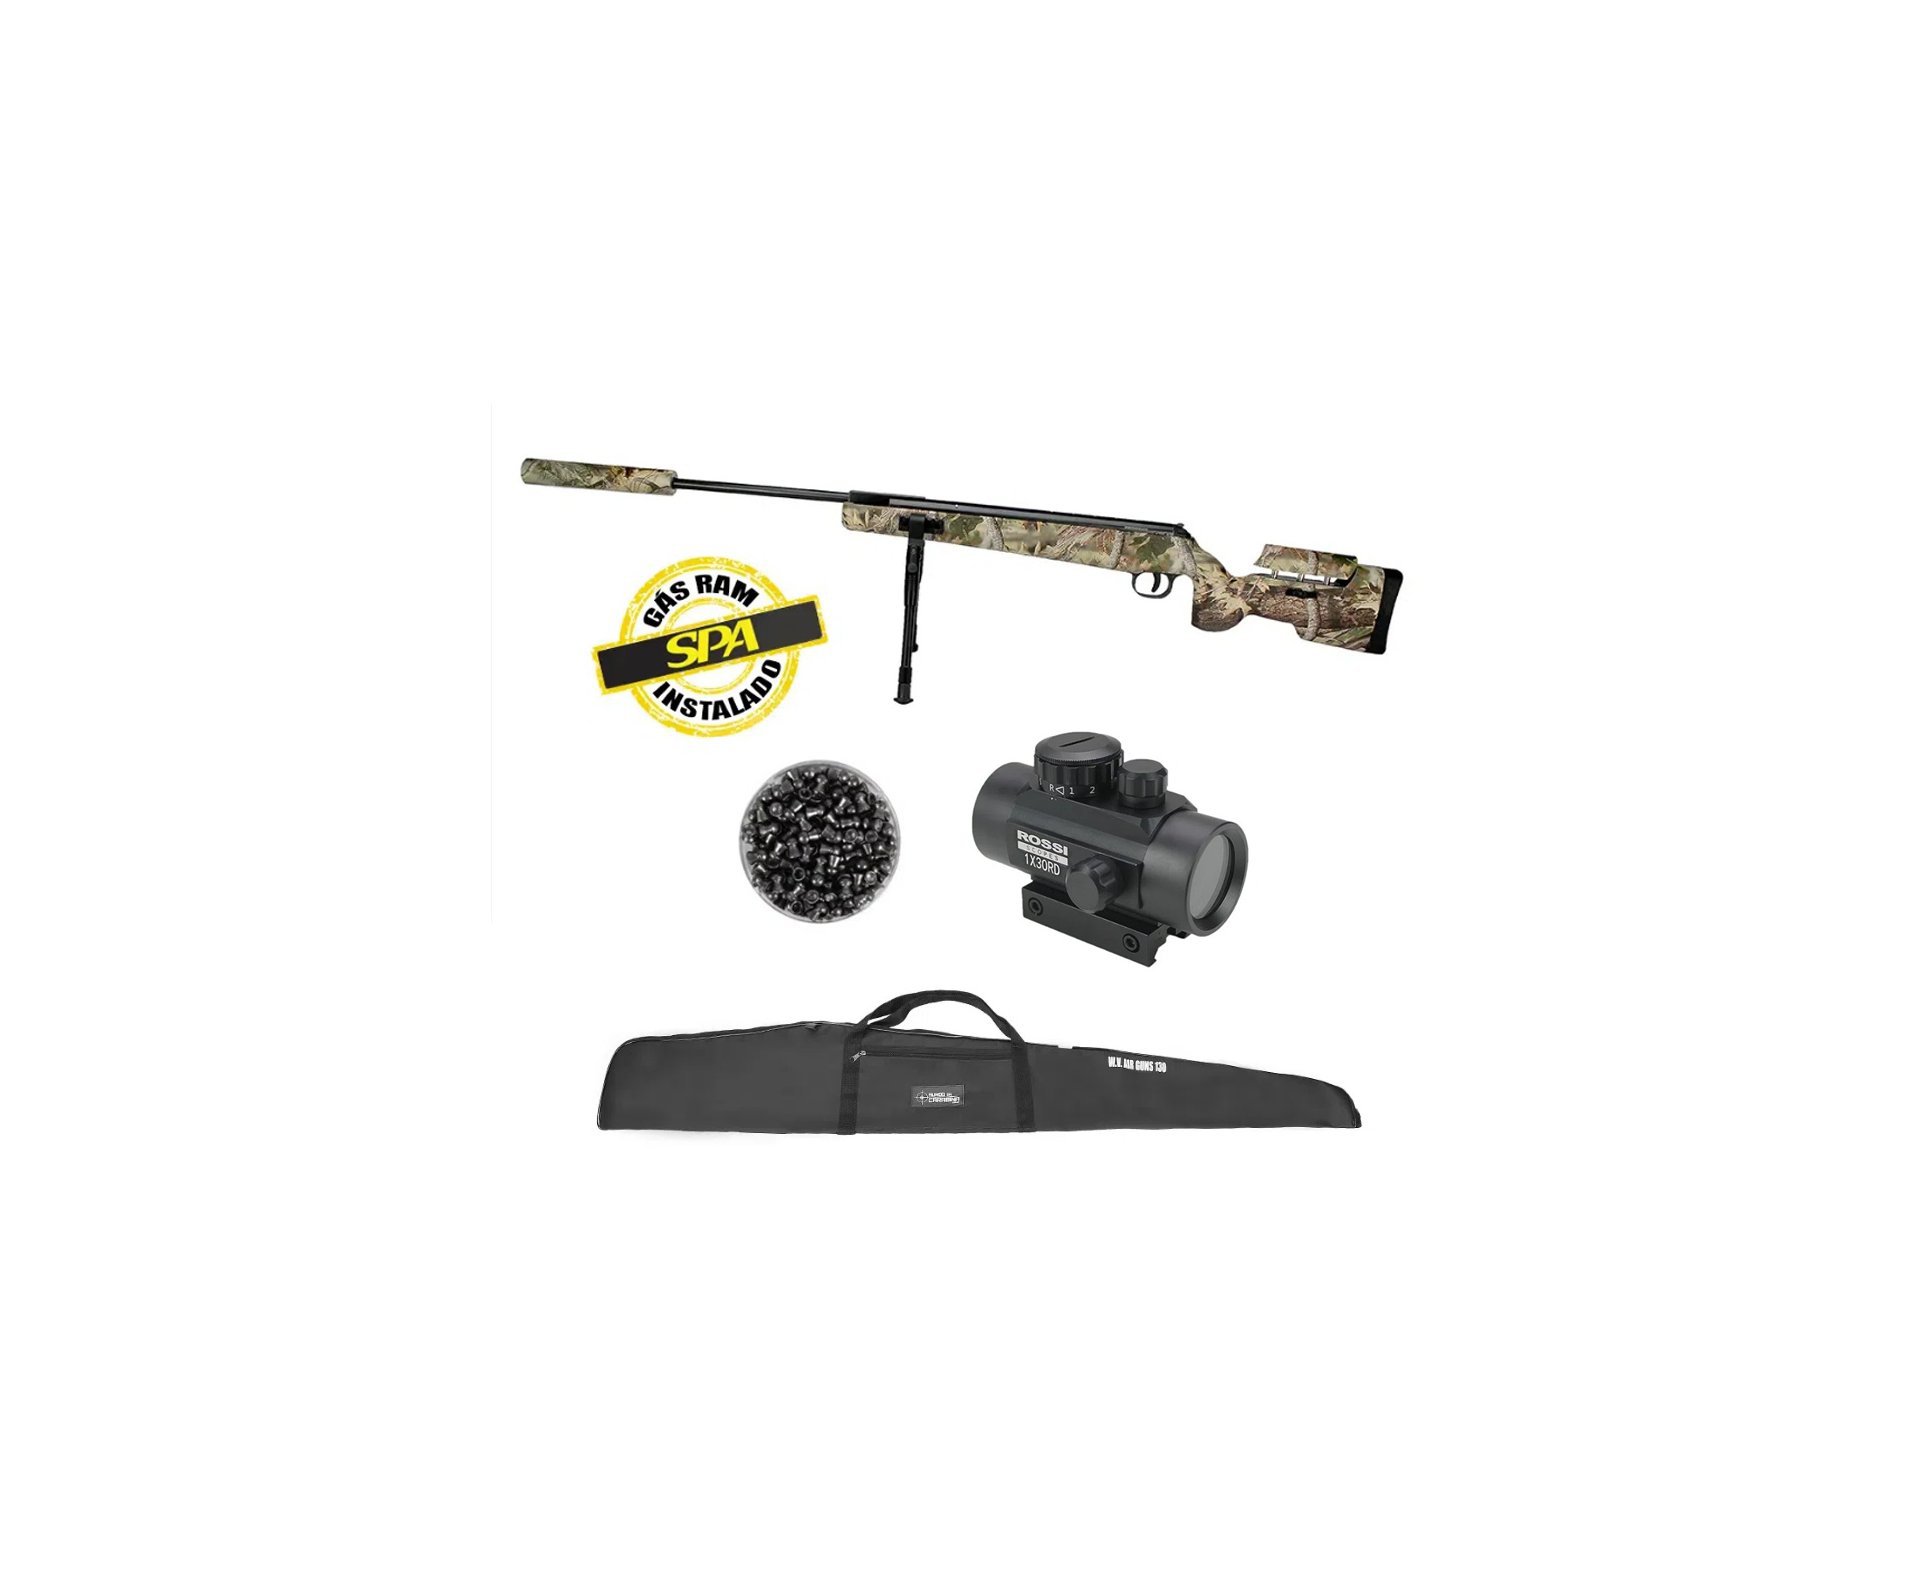 Carabina De Pressão Eagle Camo 1250 Sniper Gas Ram 70kg 4.5mm Qgk By Spa + Red dot + Chumbinho + Capa